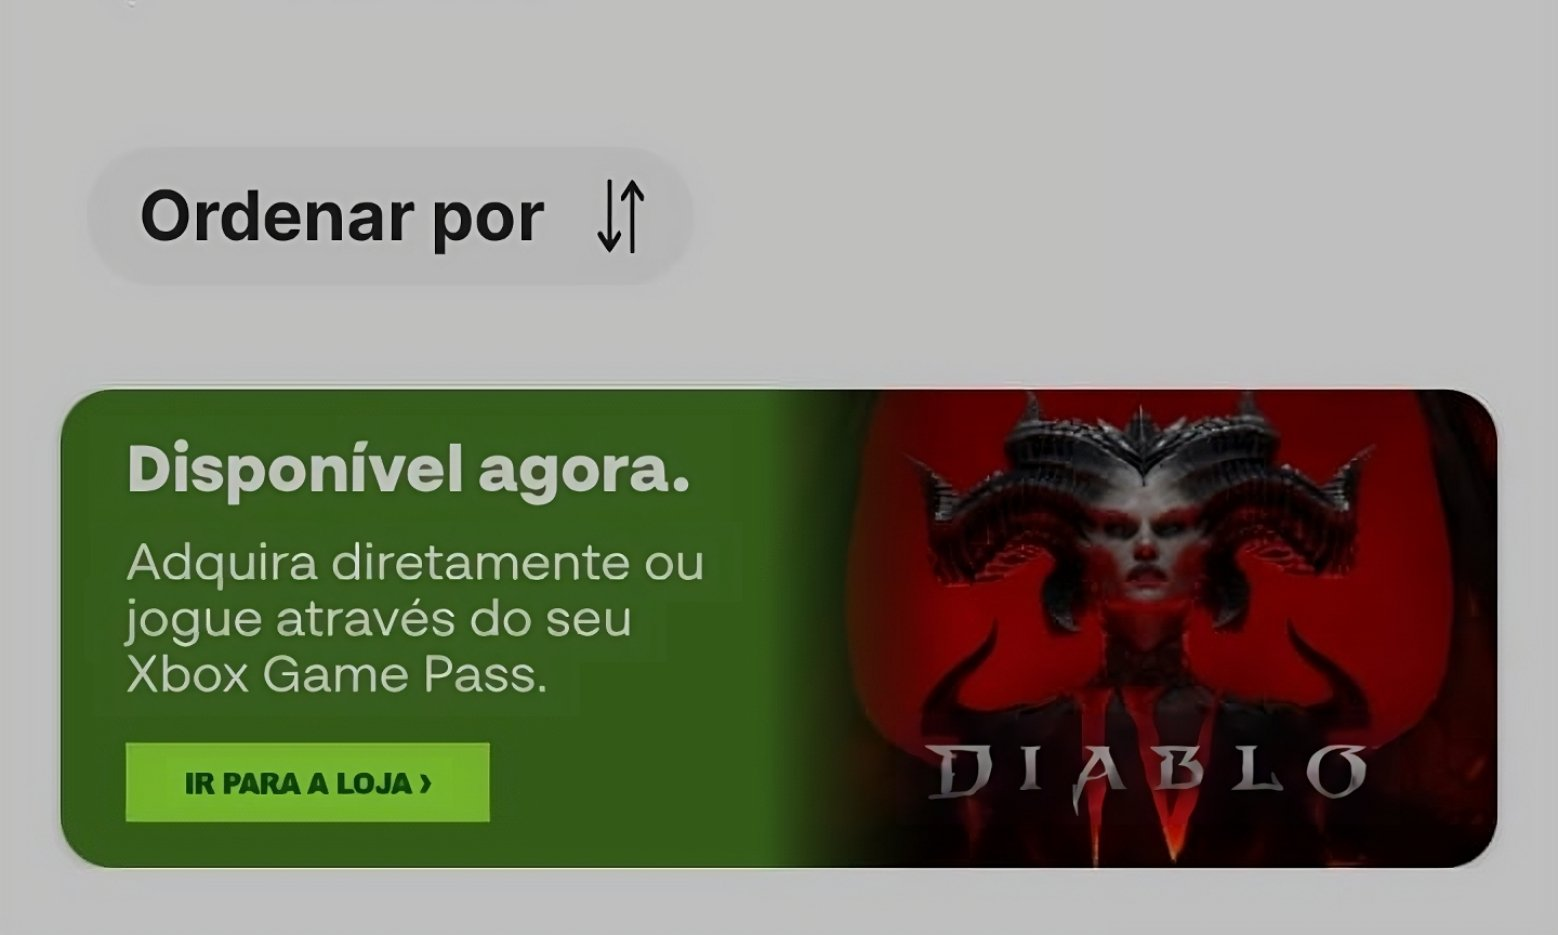 Diablo 4 + gamepass. Диабло баннер в Америке. Богоподобный гейм пасс. Диабло 4 волк.